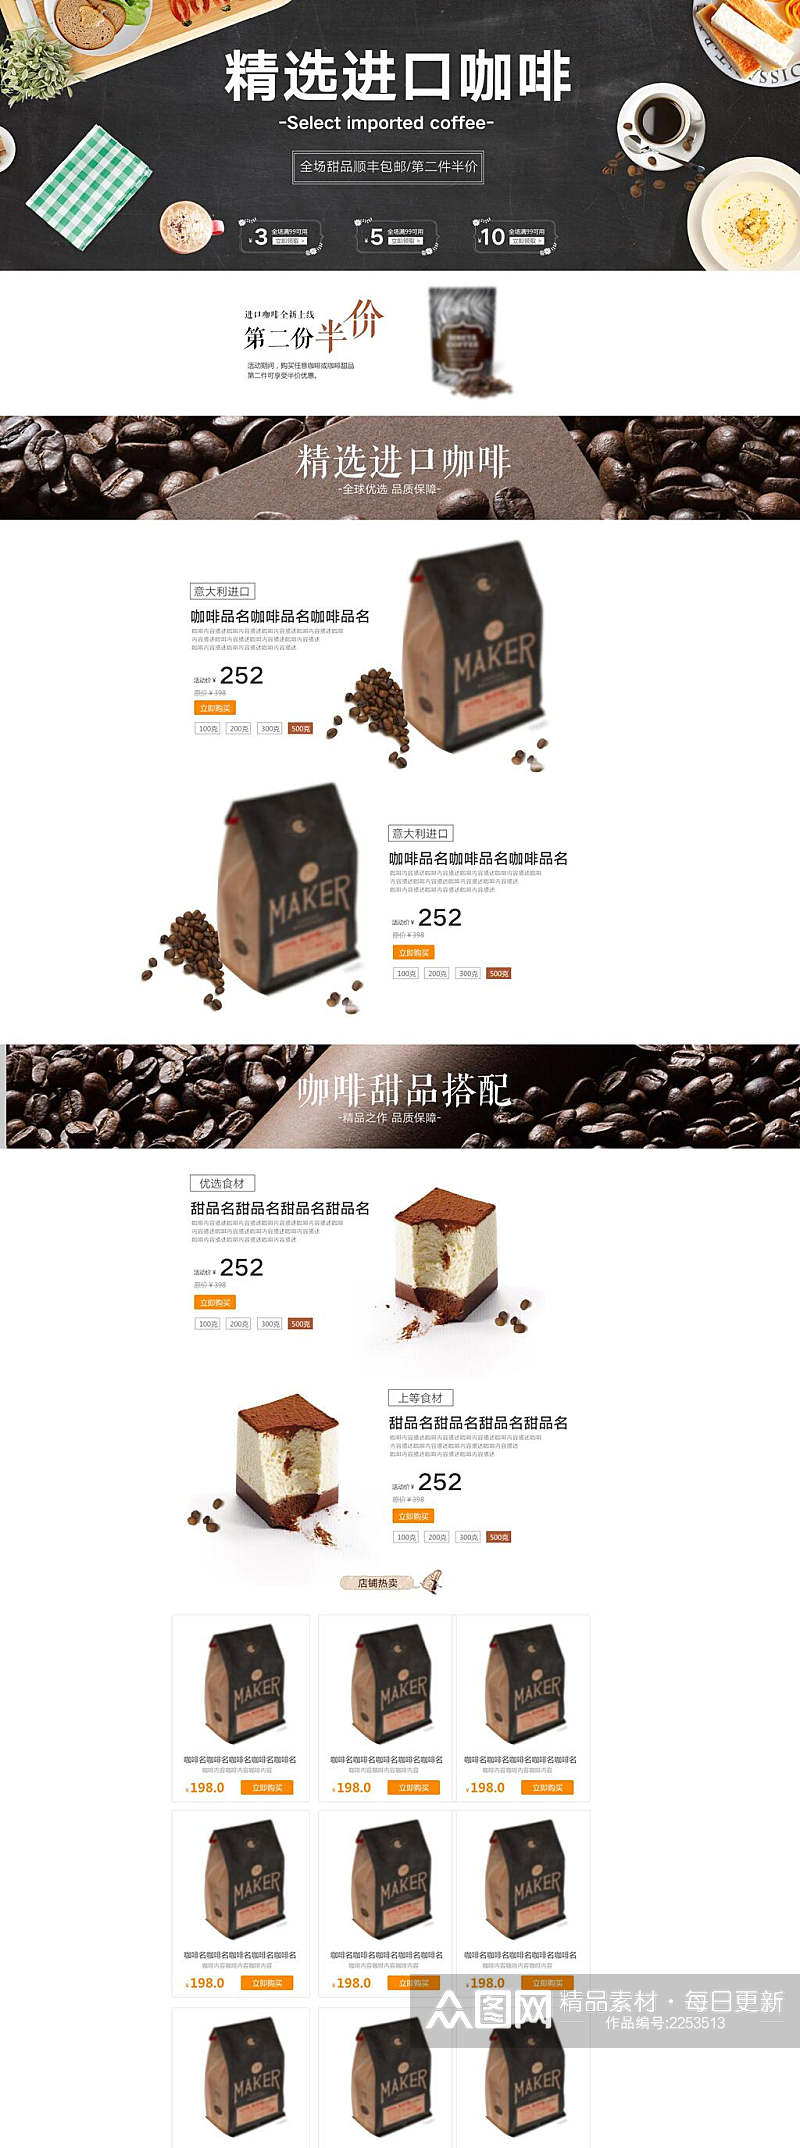 精选进口咖啡第二份半价咖啡电商详情页素材